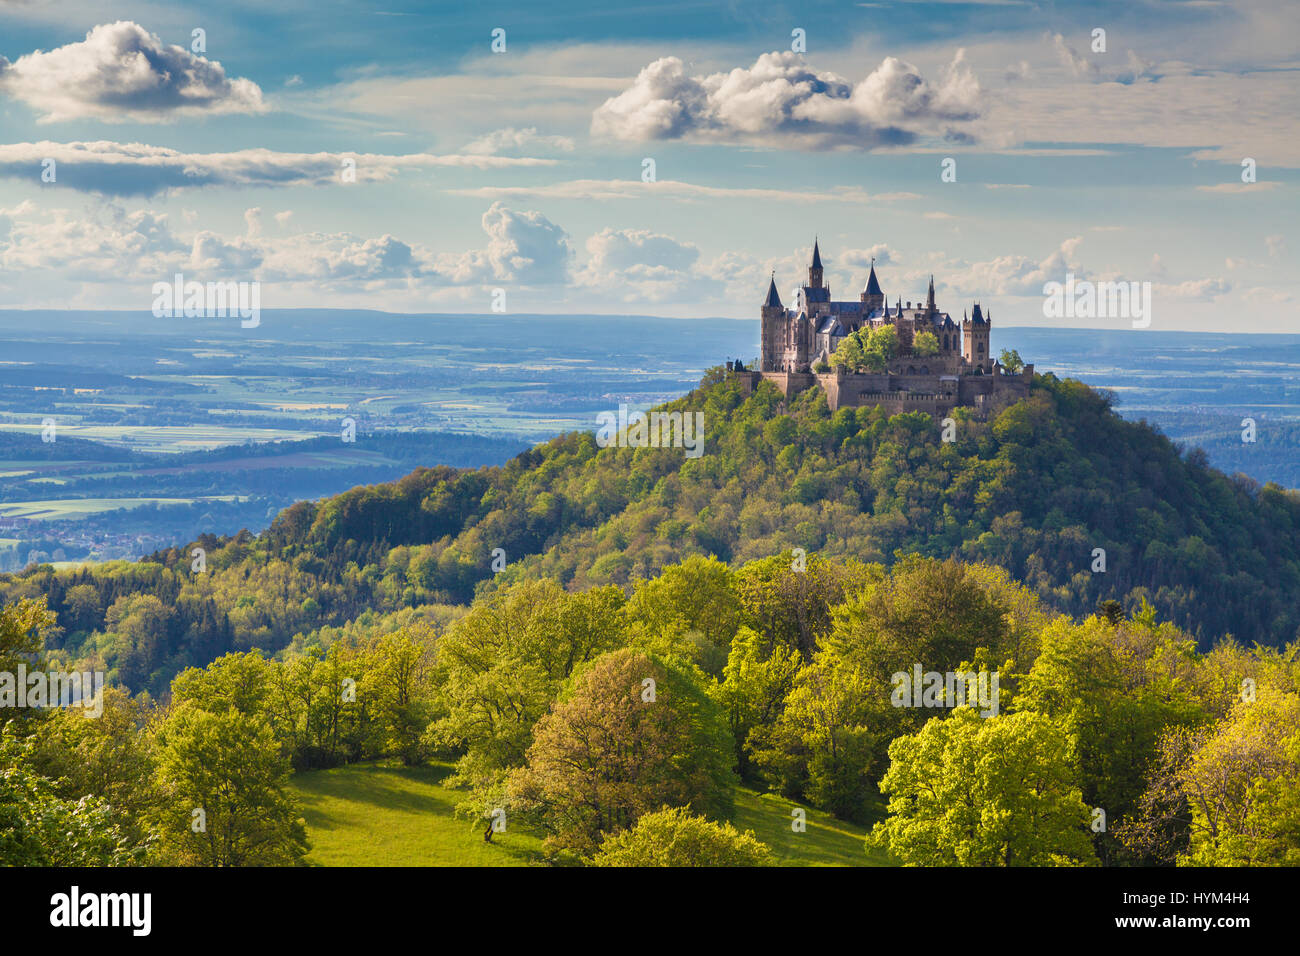 Luftaufnahme der berühmten Burg Hohenzollern, einer der meist besuchten Burgen Europas, bei Sonnenuntergang, Baden-Württemberg, Deutschland Stockfoto